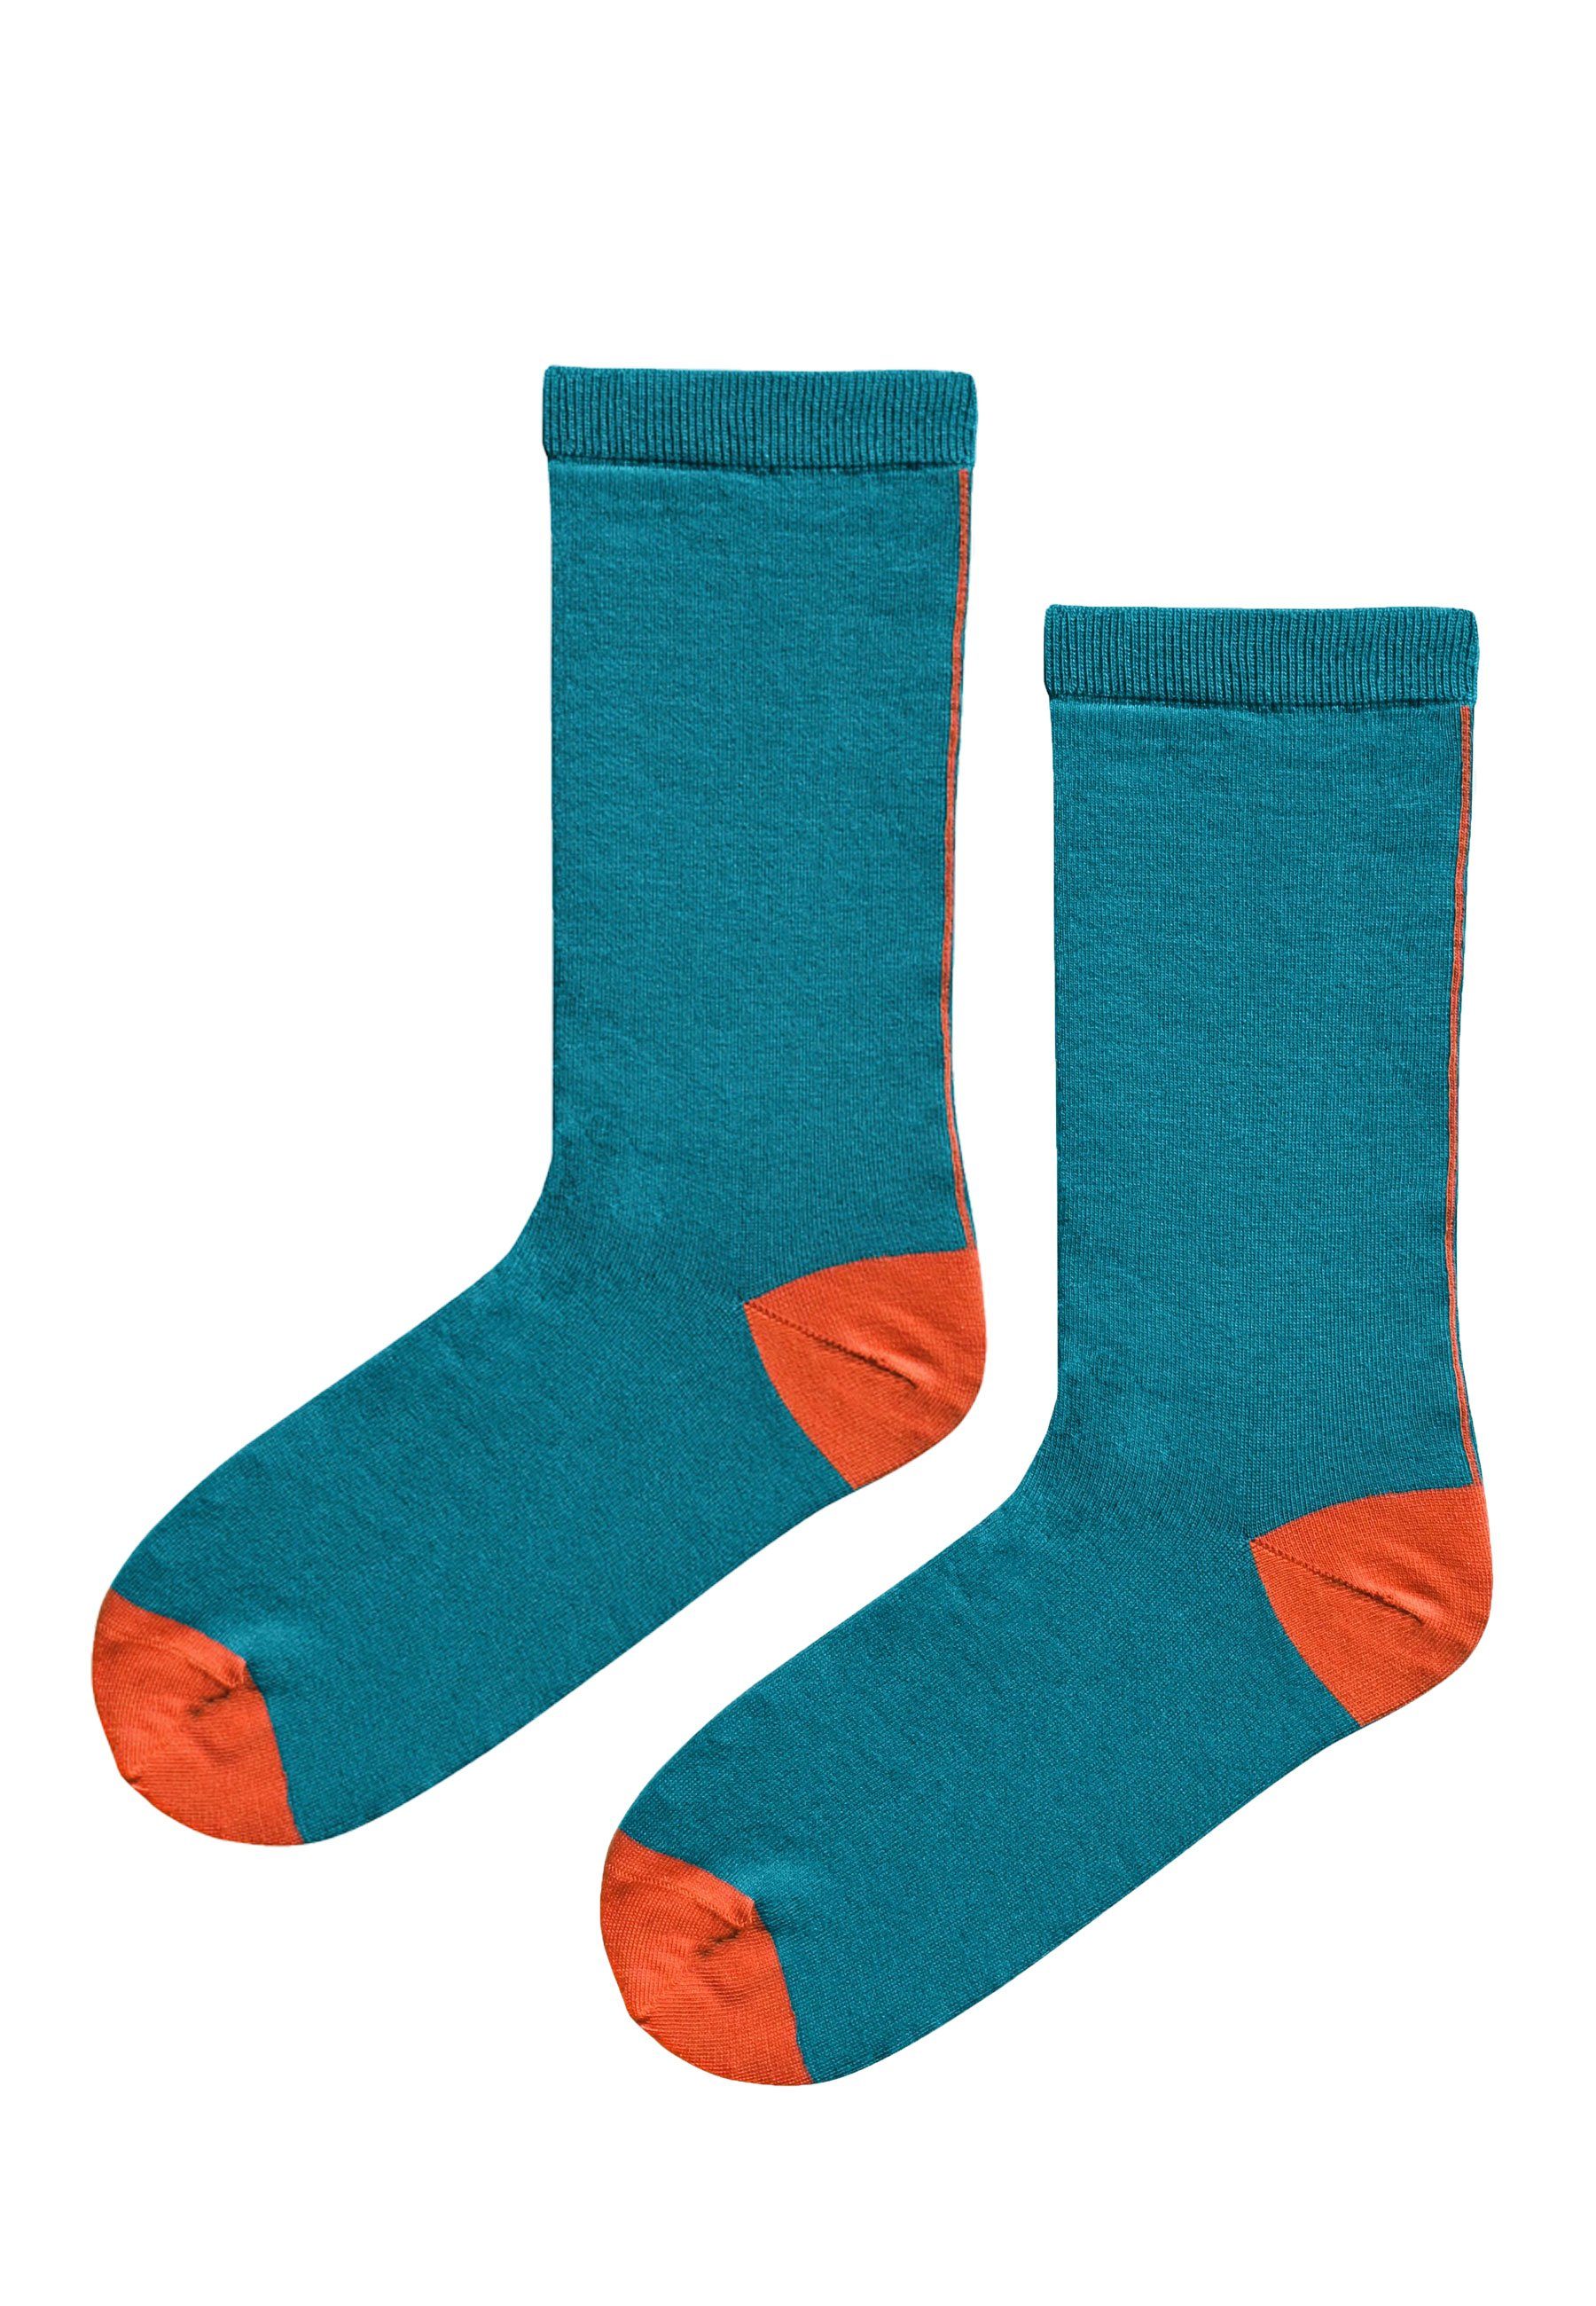 Elkline Socken Schönefüsschen Socken Schönefüsschen zweifarbig blue coral - mandarin